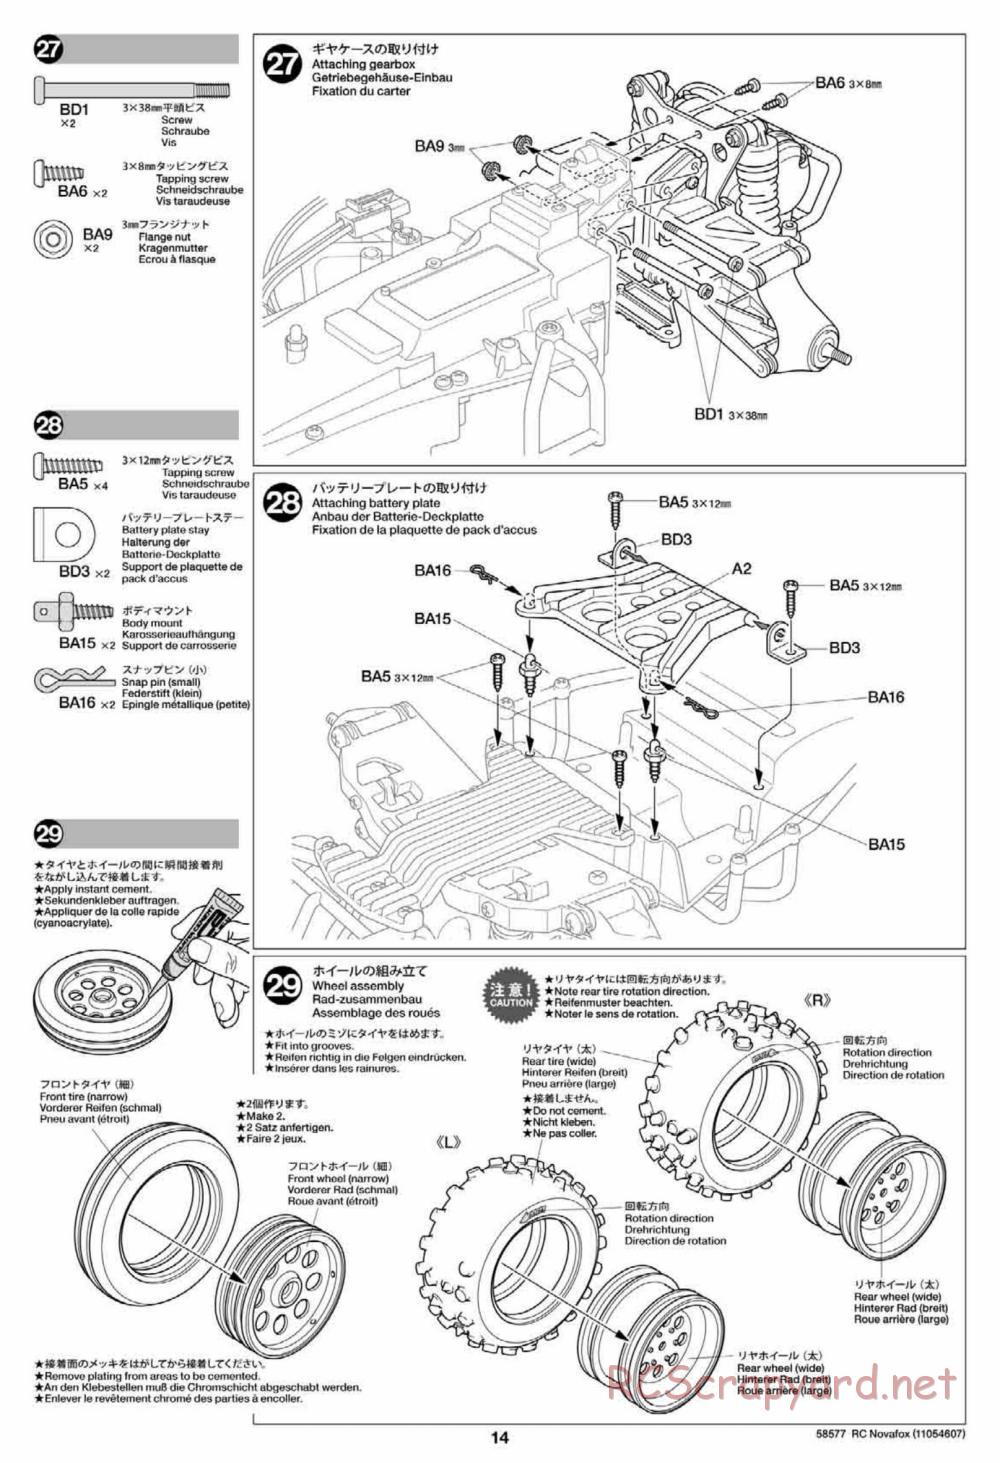 Tamiya - Novafox Chassis - Manual - Page 14